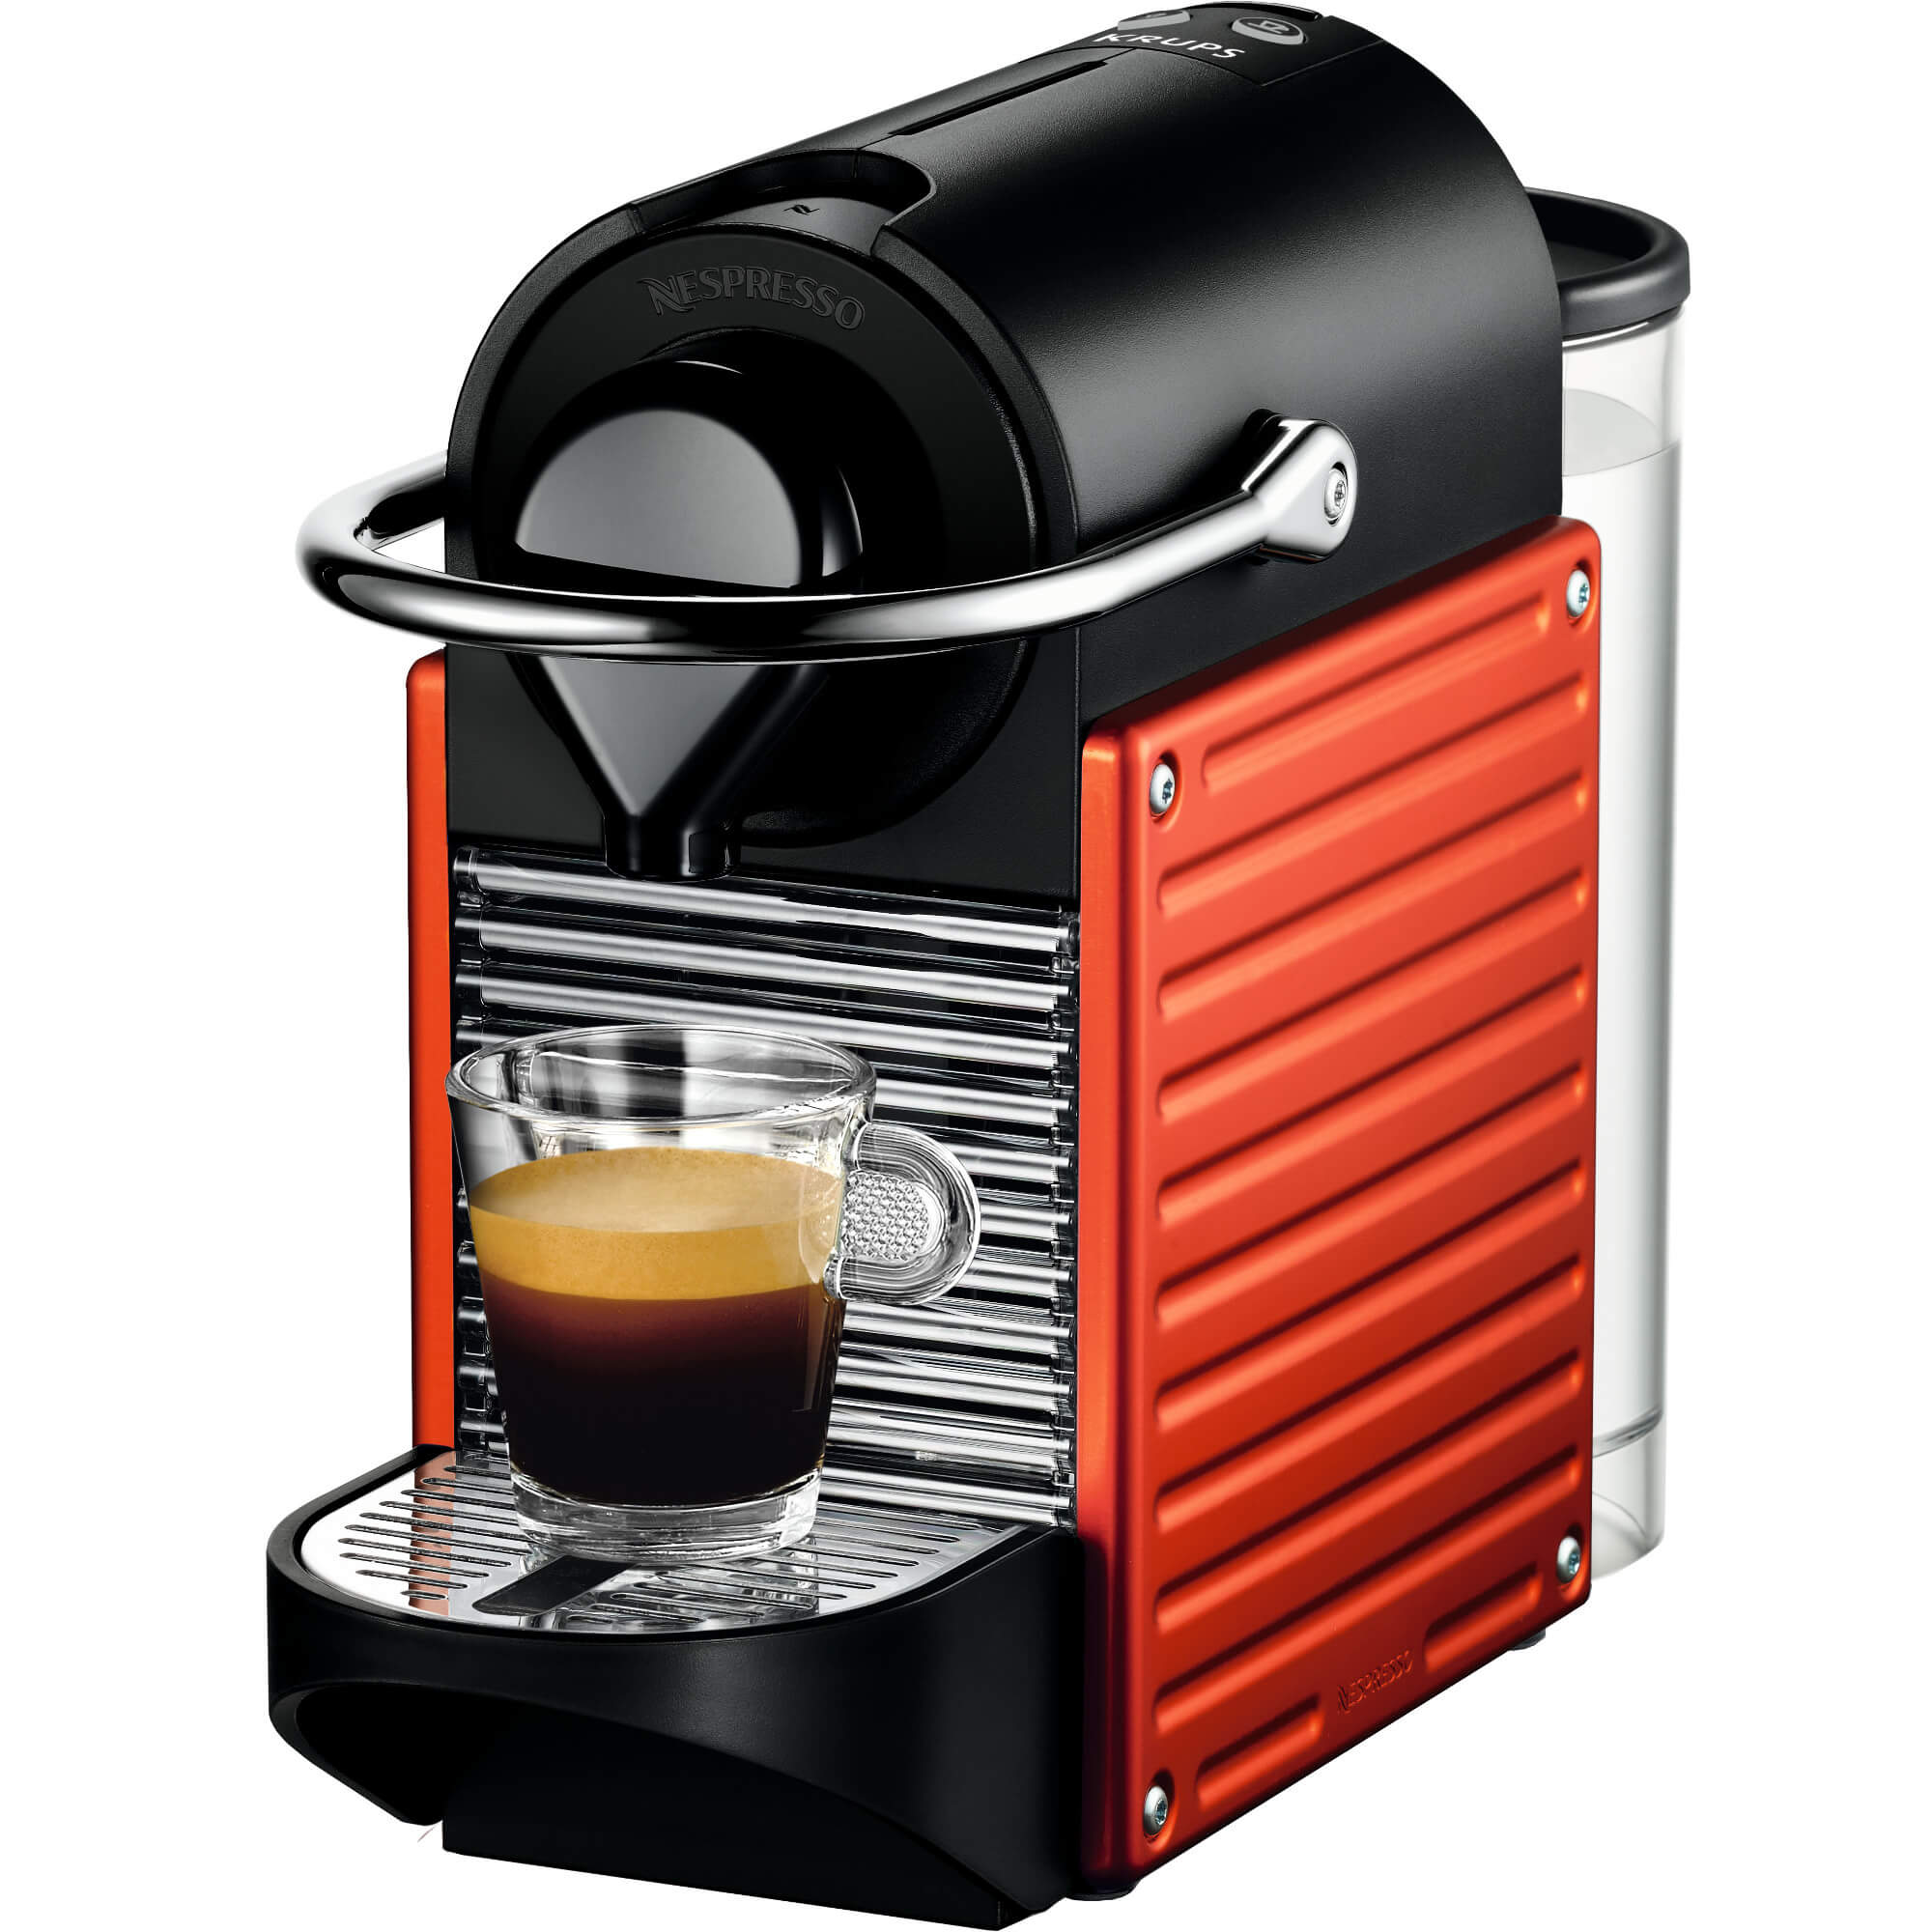  Espressor Nespresso Pixie C60, 1260 W, 0.8 L, 19 bar, Rosu 